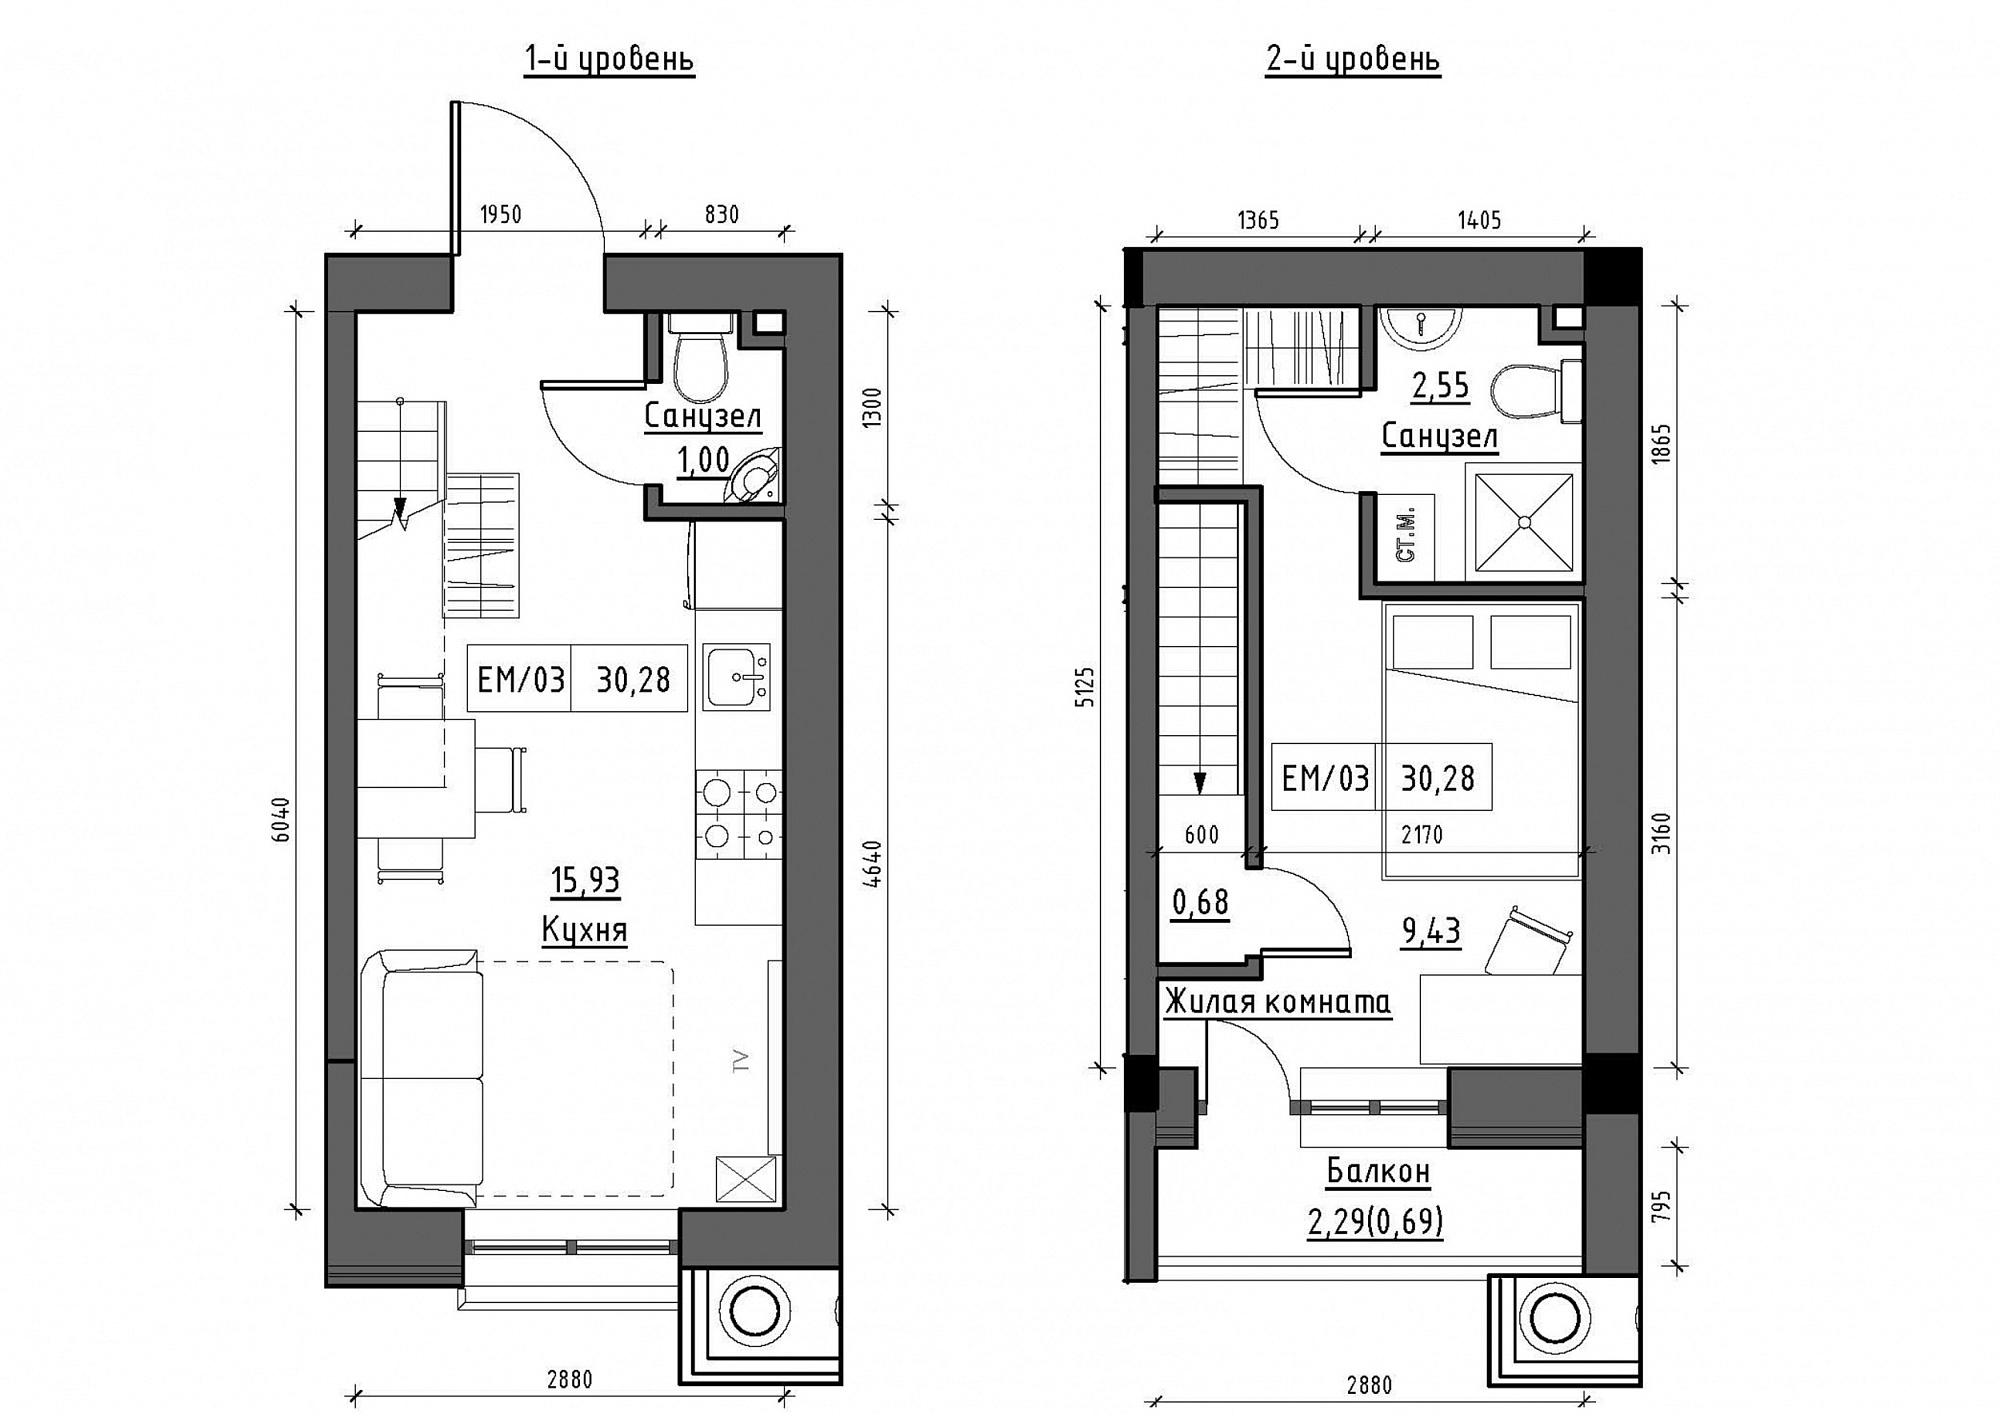 Planning 2-lvl flats area 30.28m2, KS-012-05/0009.